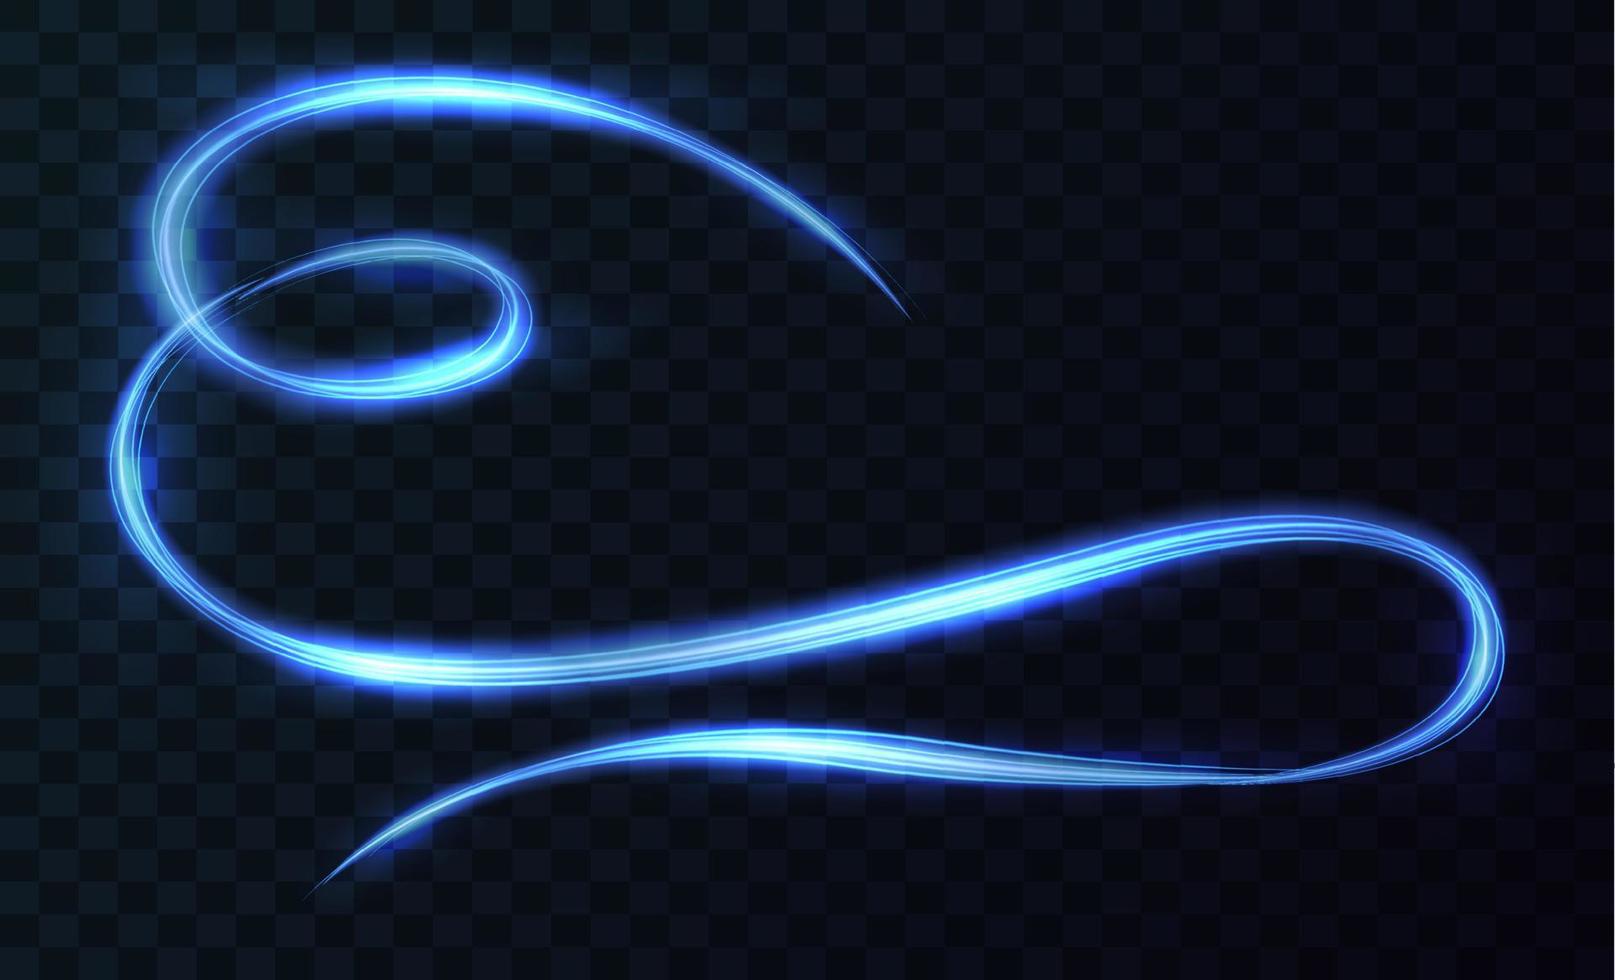 kromme licht effect van blauw lijn. ronddraaien blauw licht. neon gloeiend curves in donker ruimte. vector illustratie